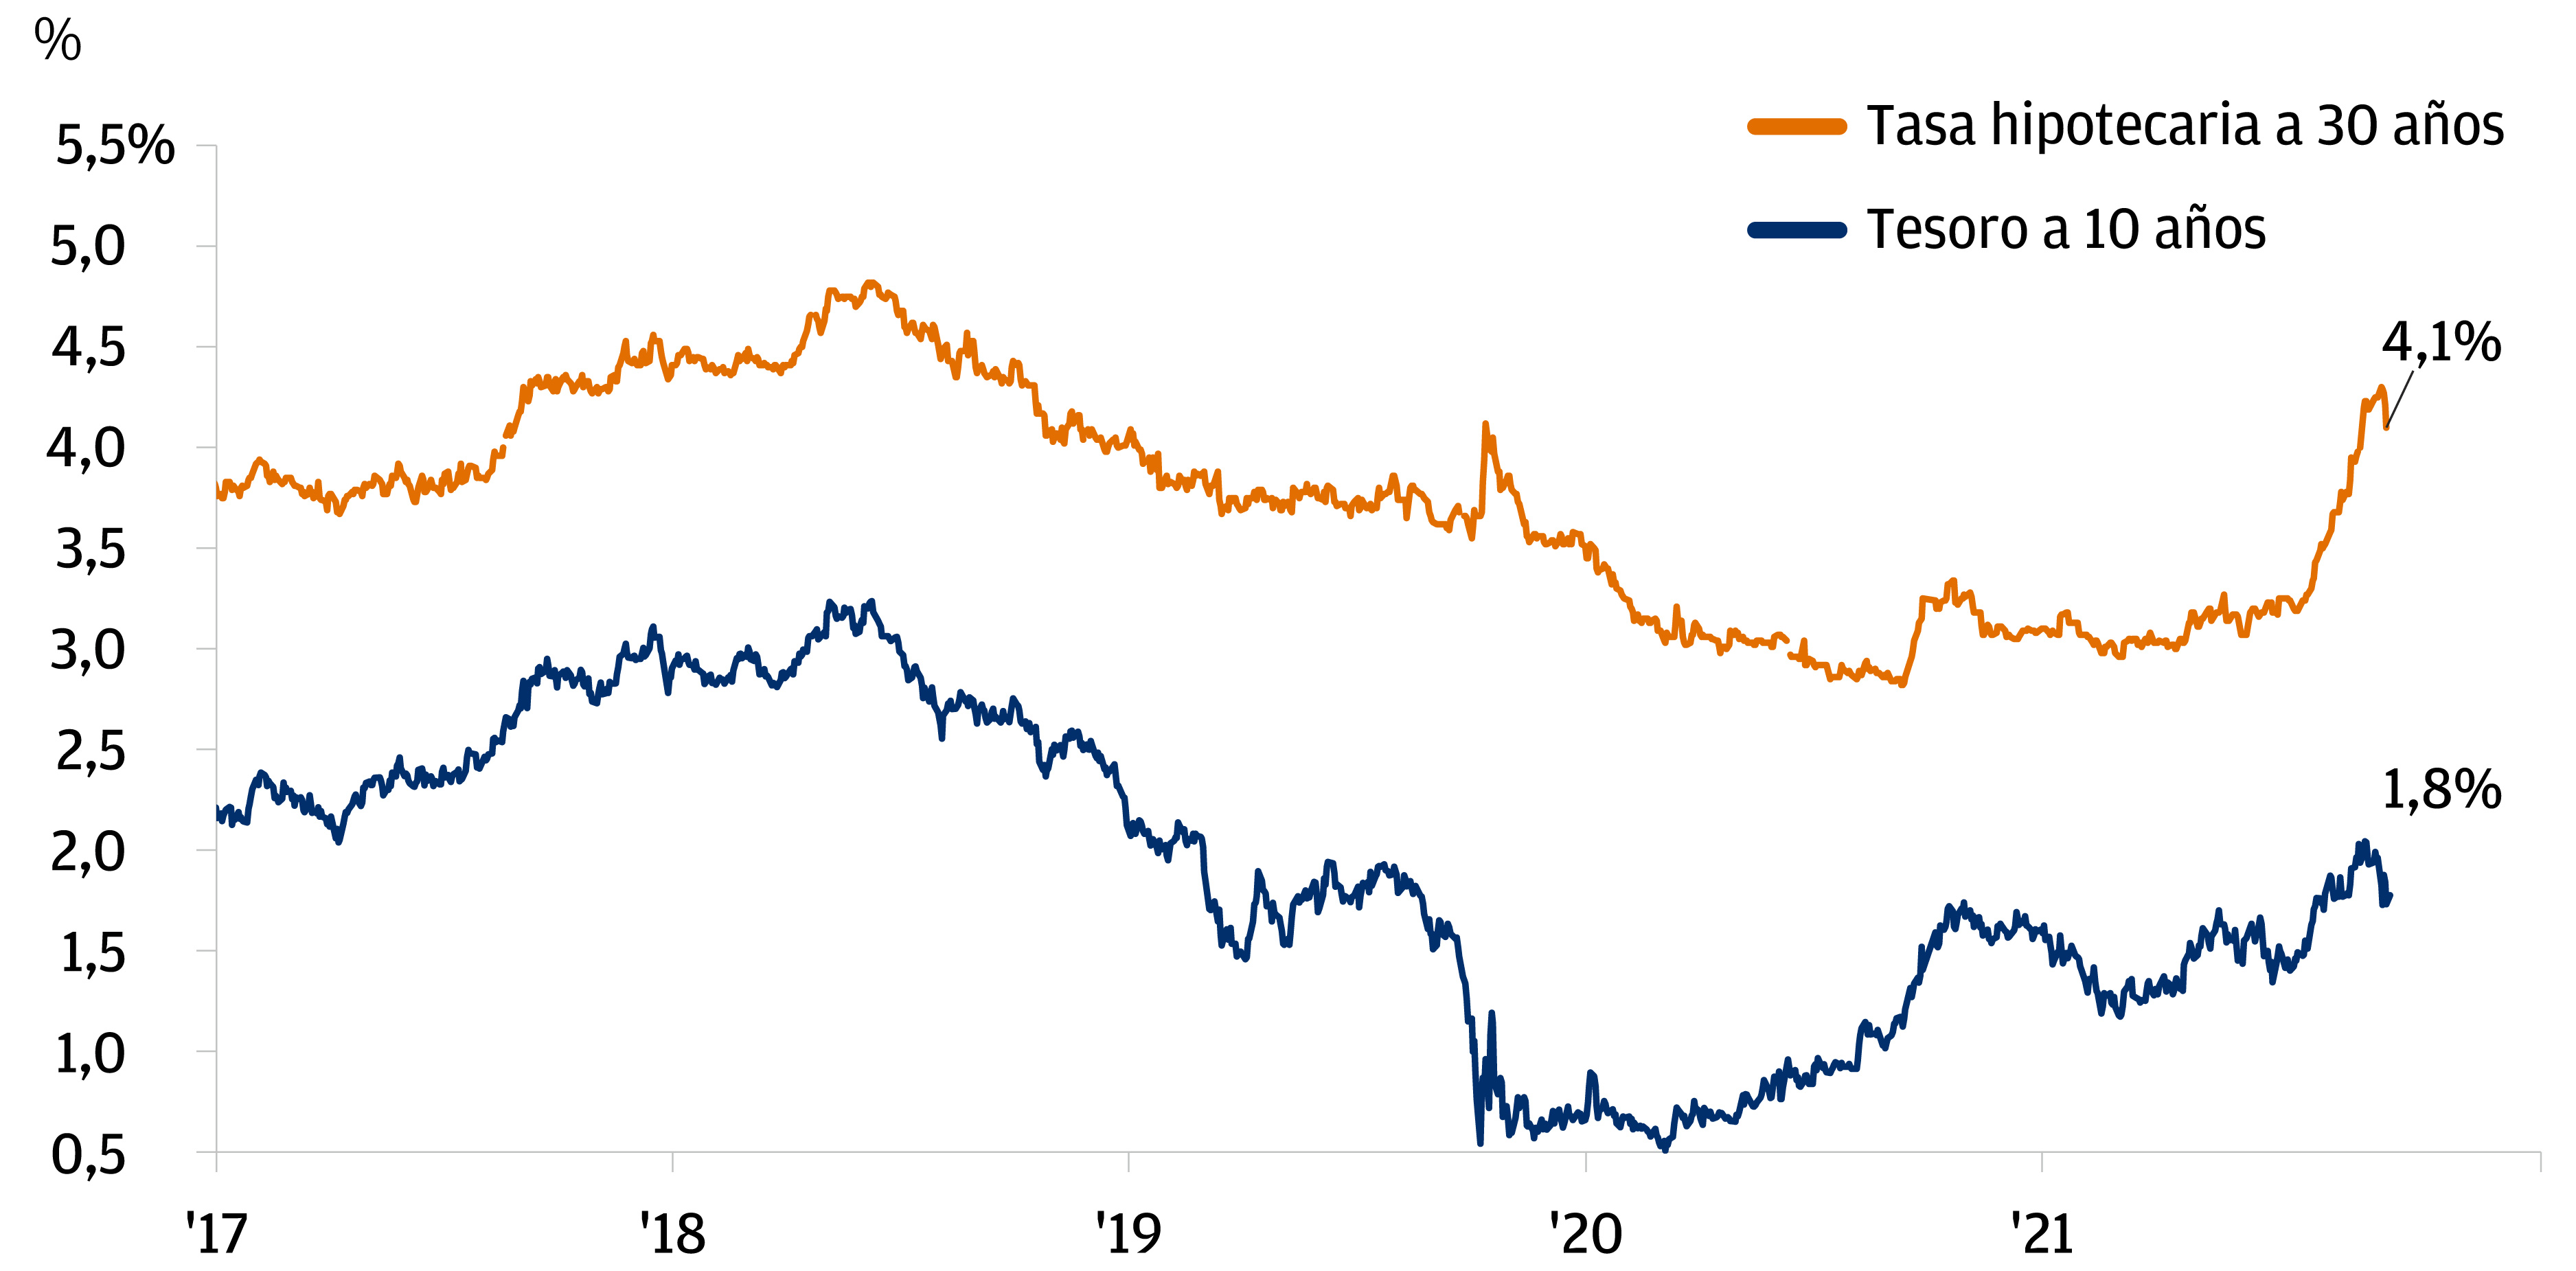 El rendimiento del Tesoro a 10 años y la tasa hipotecaria a 30 años vuelven a los niveles de 2019